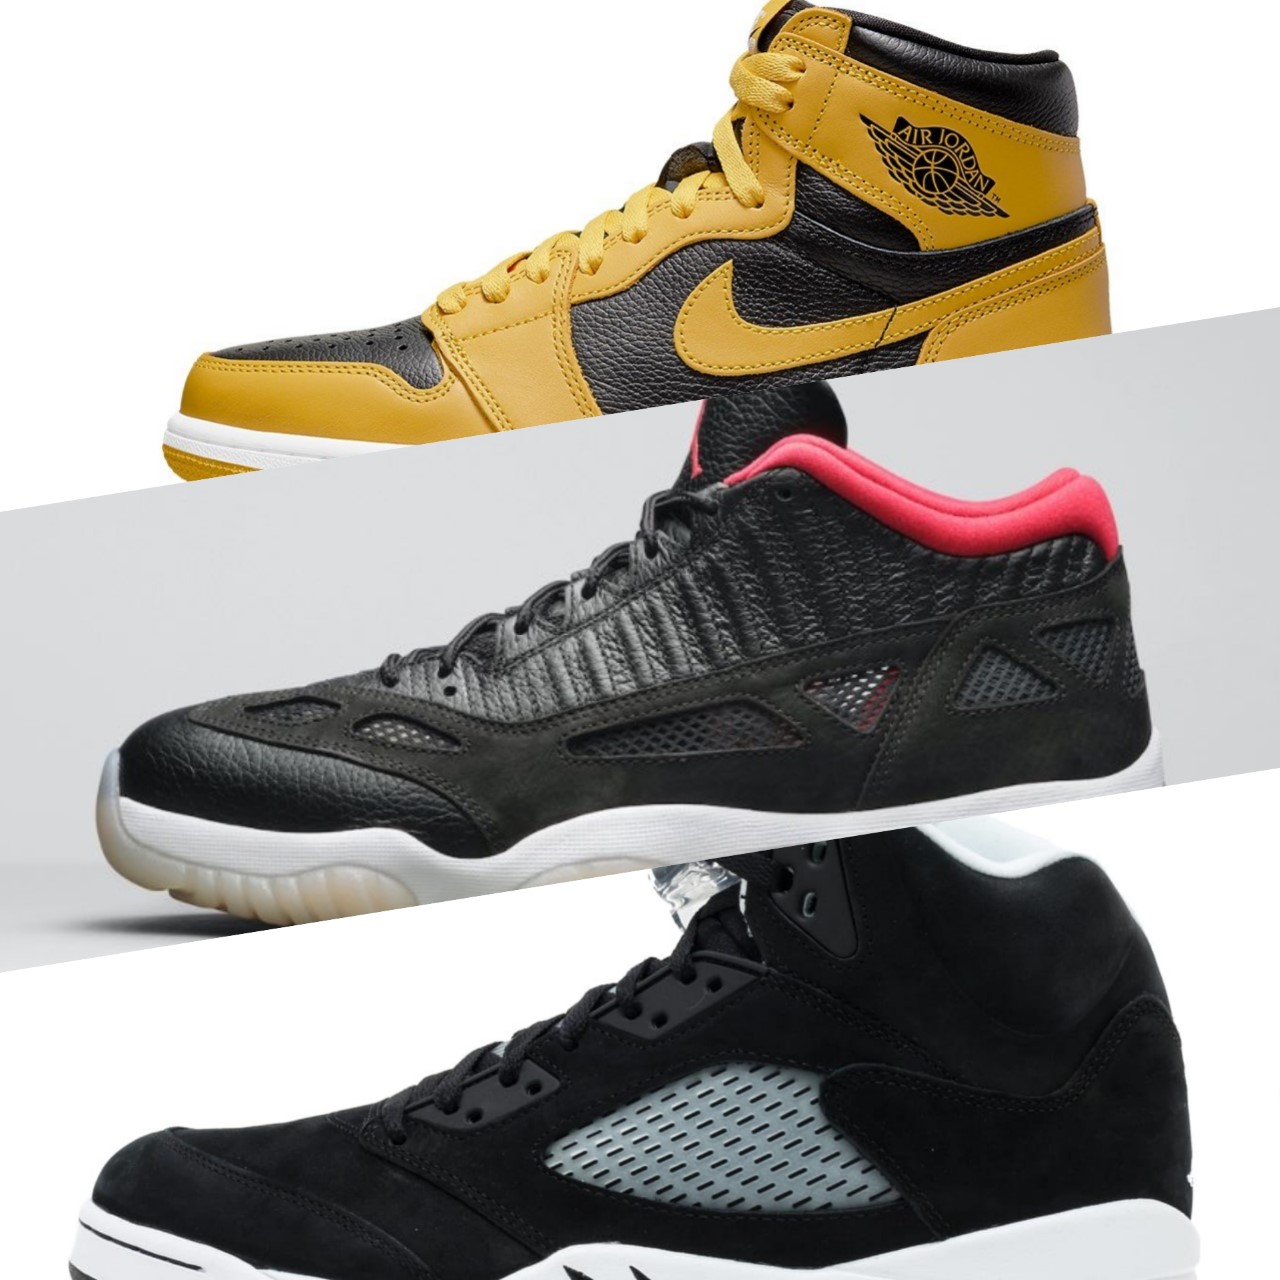 Air Jordan Summer/Fall Release Date Changes Sneaker Buzz